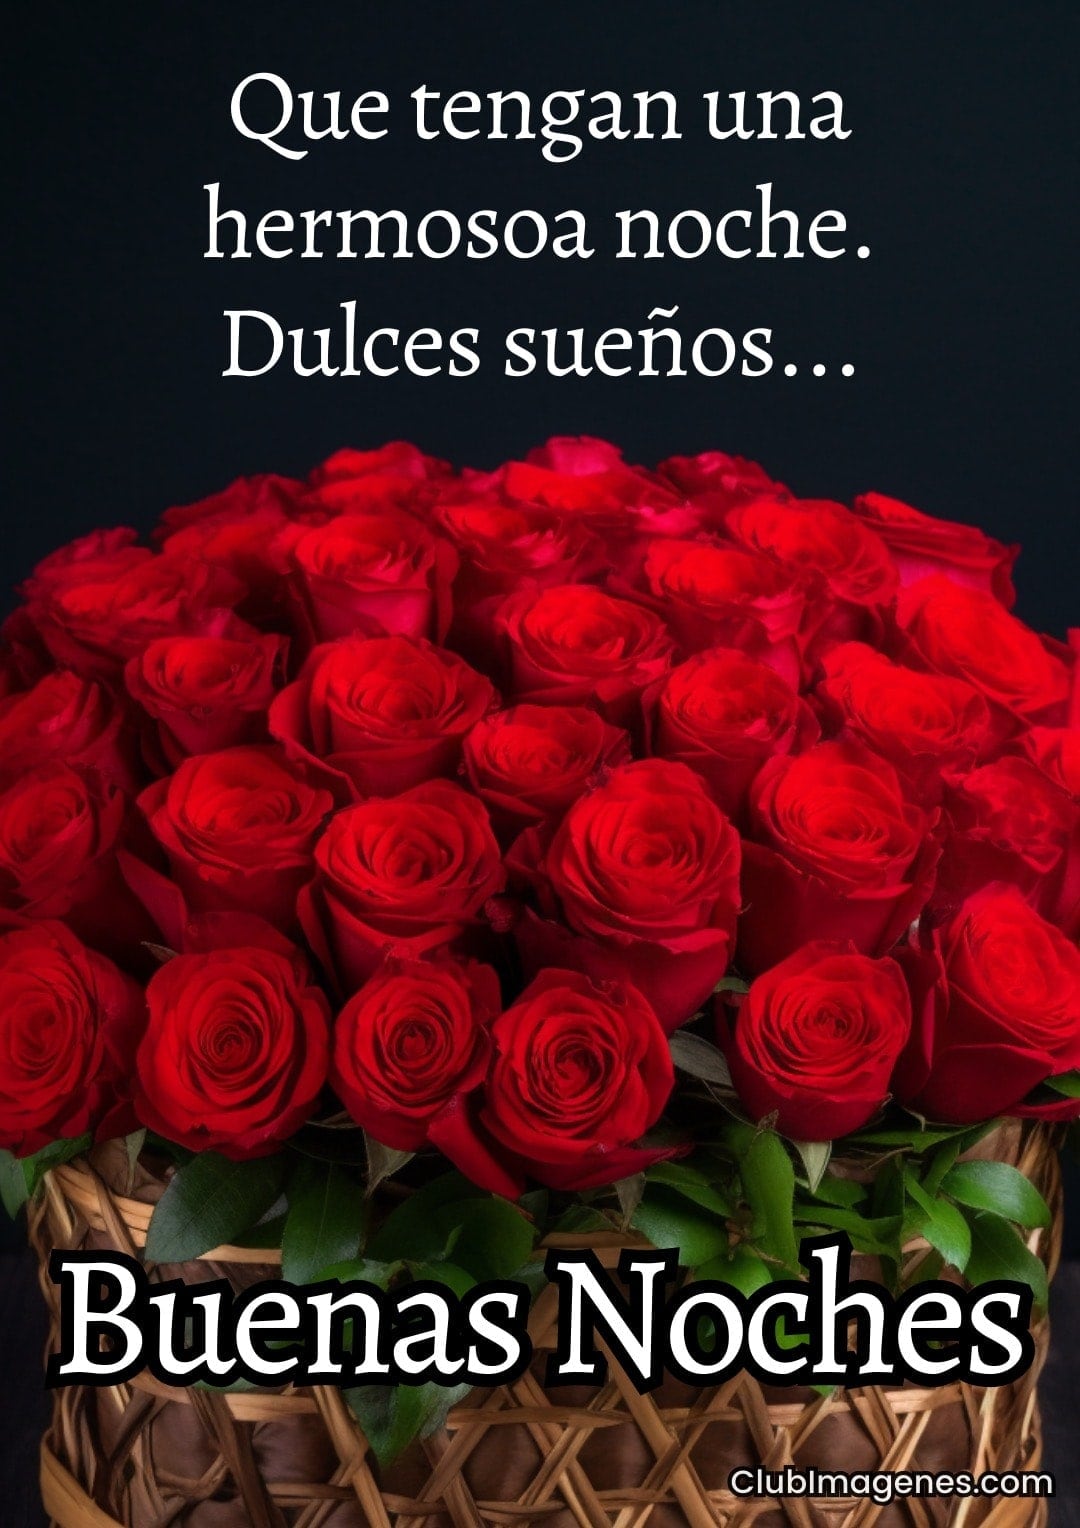 Cesta de rosas rojas con dulce mensaje de buenas noches.